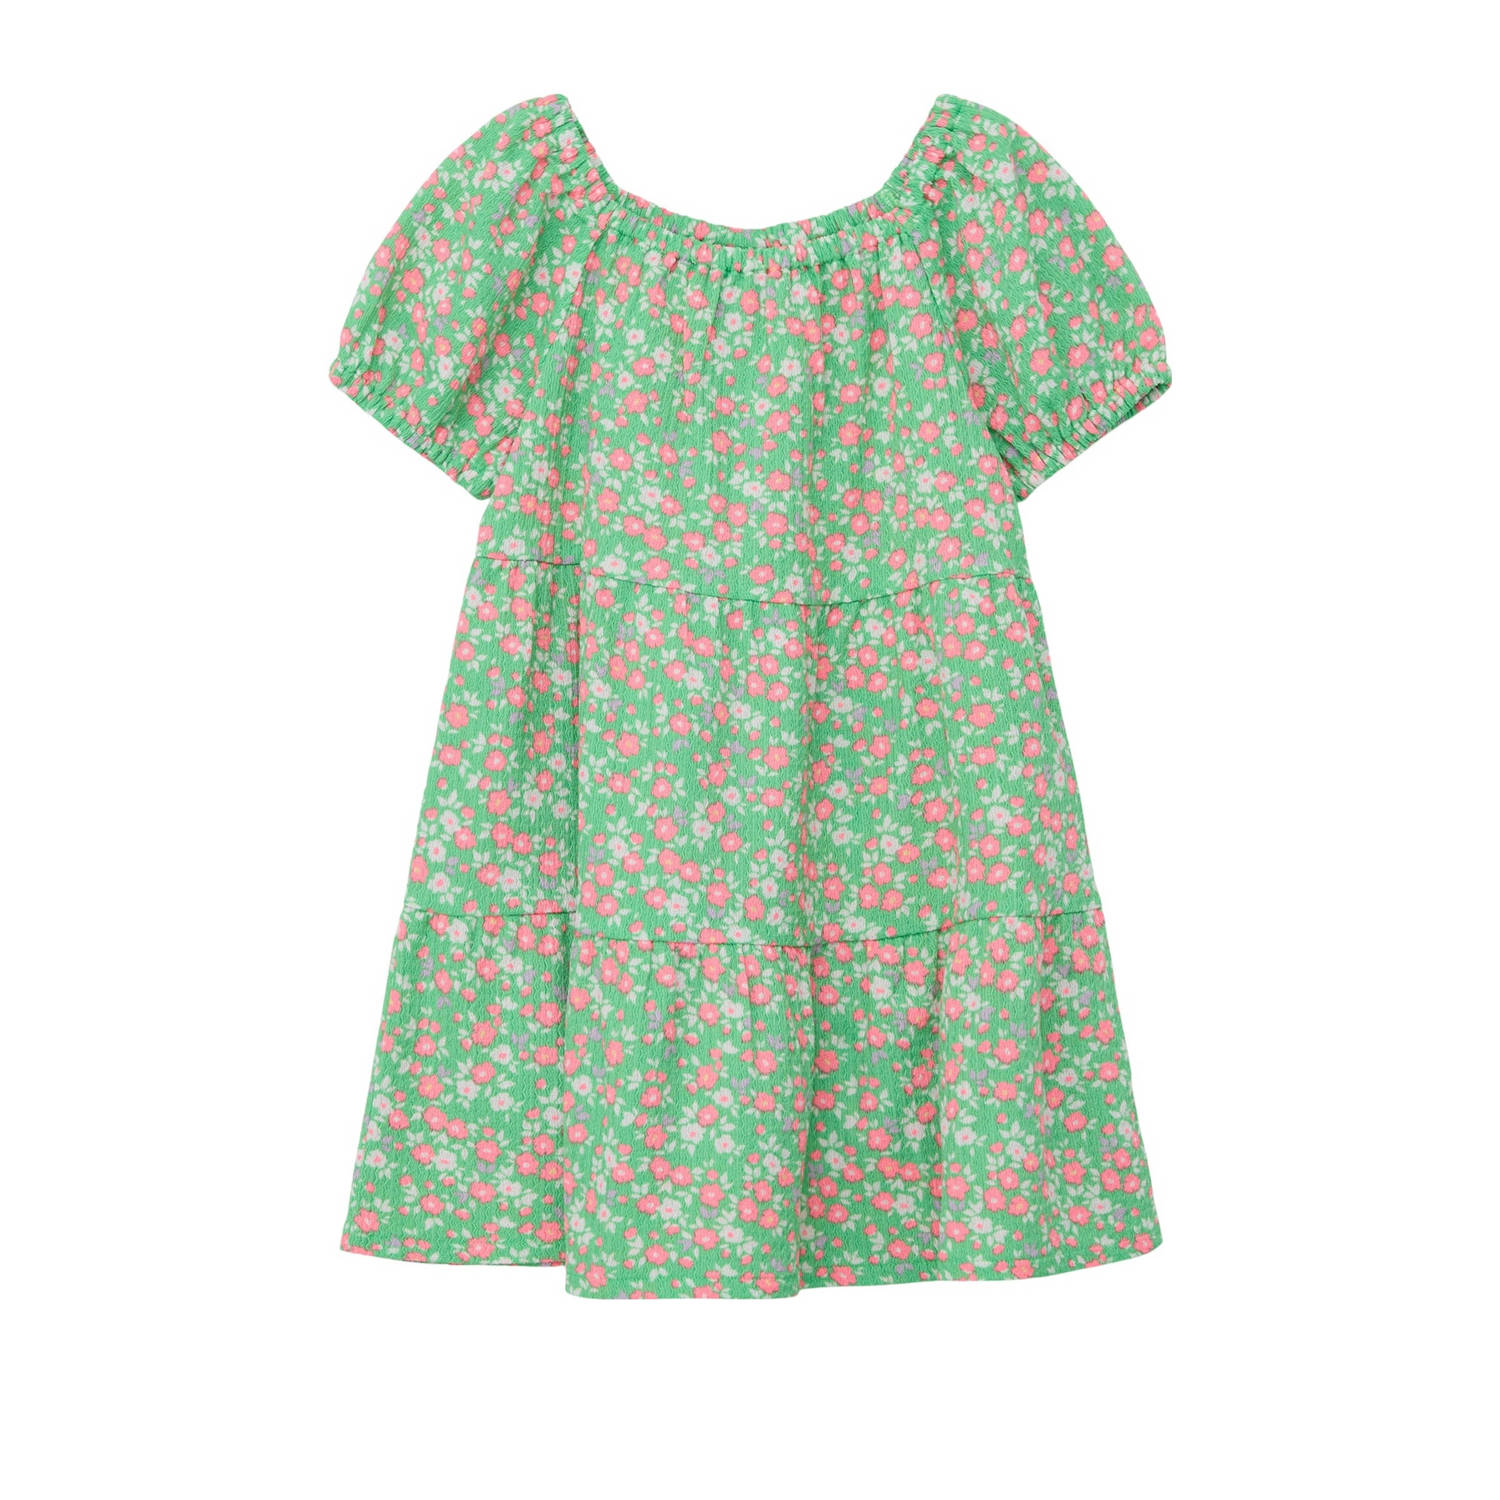 S.Oliver gebloemde jurk groen multicolor Dames Polyester Boothals Bloemen 116